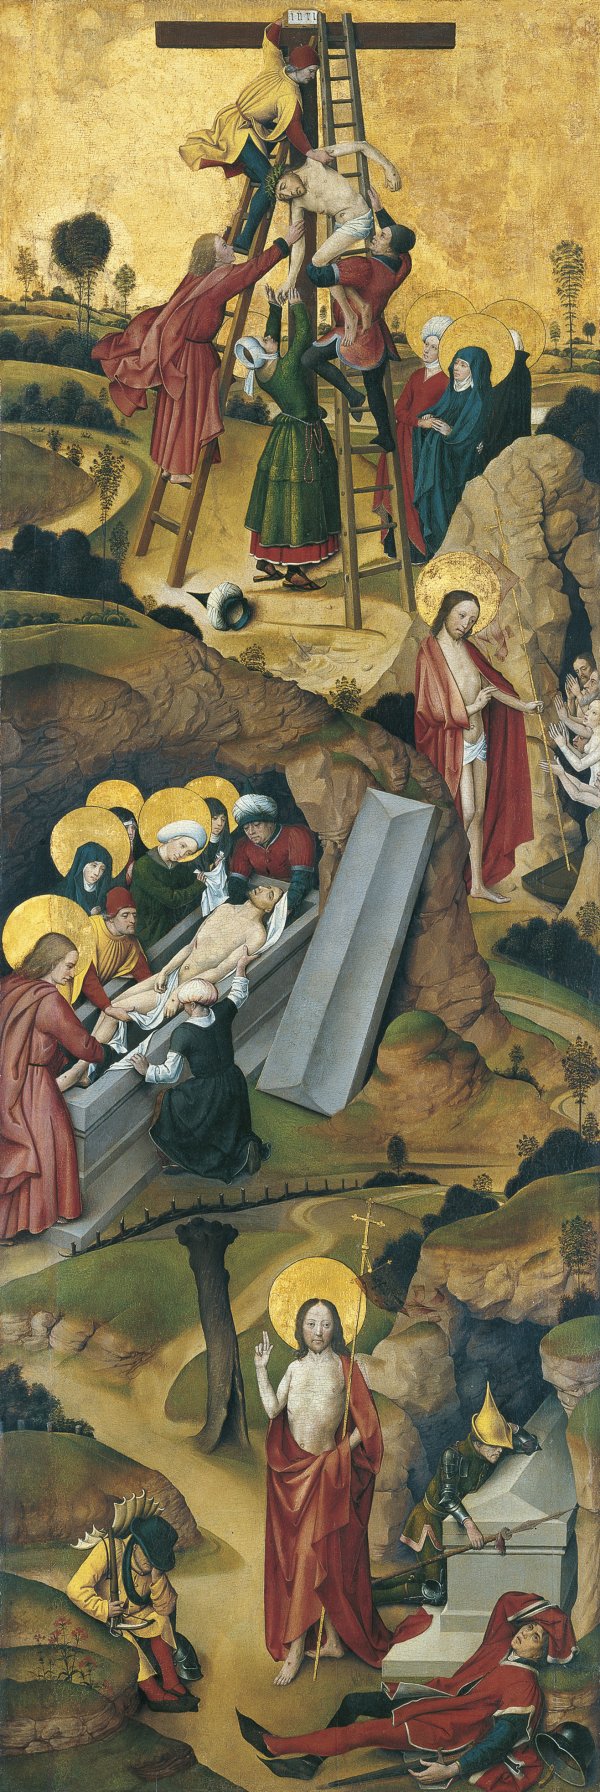 Four Scenes from the Passion. Cuatro escenas de la Pasión, c. 1495-1500